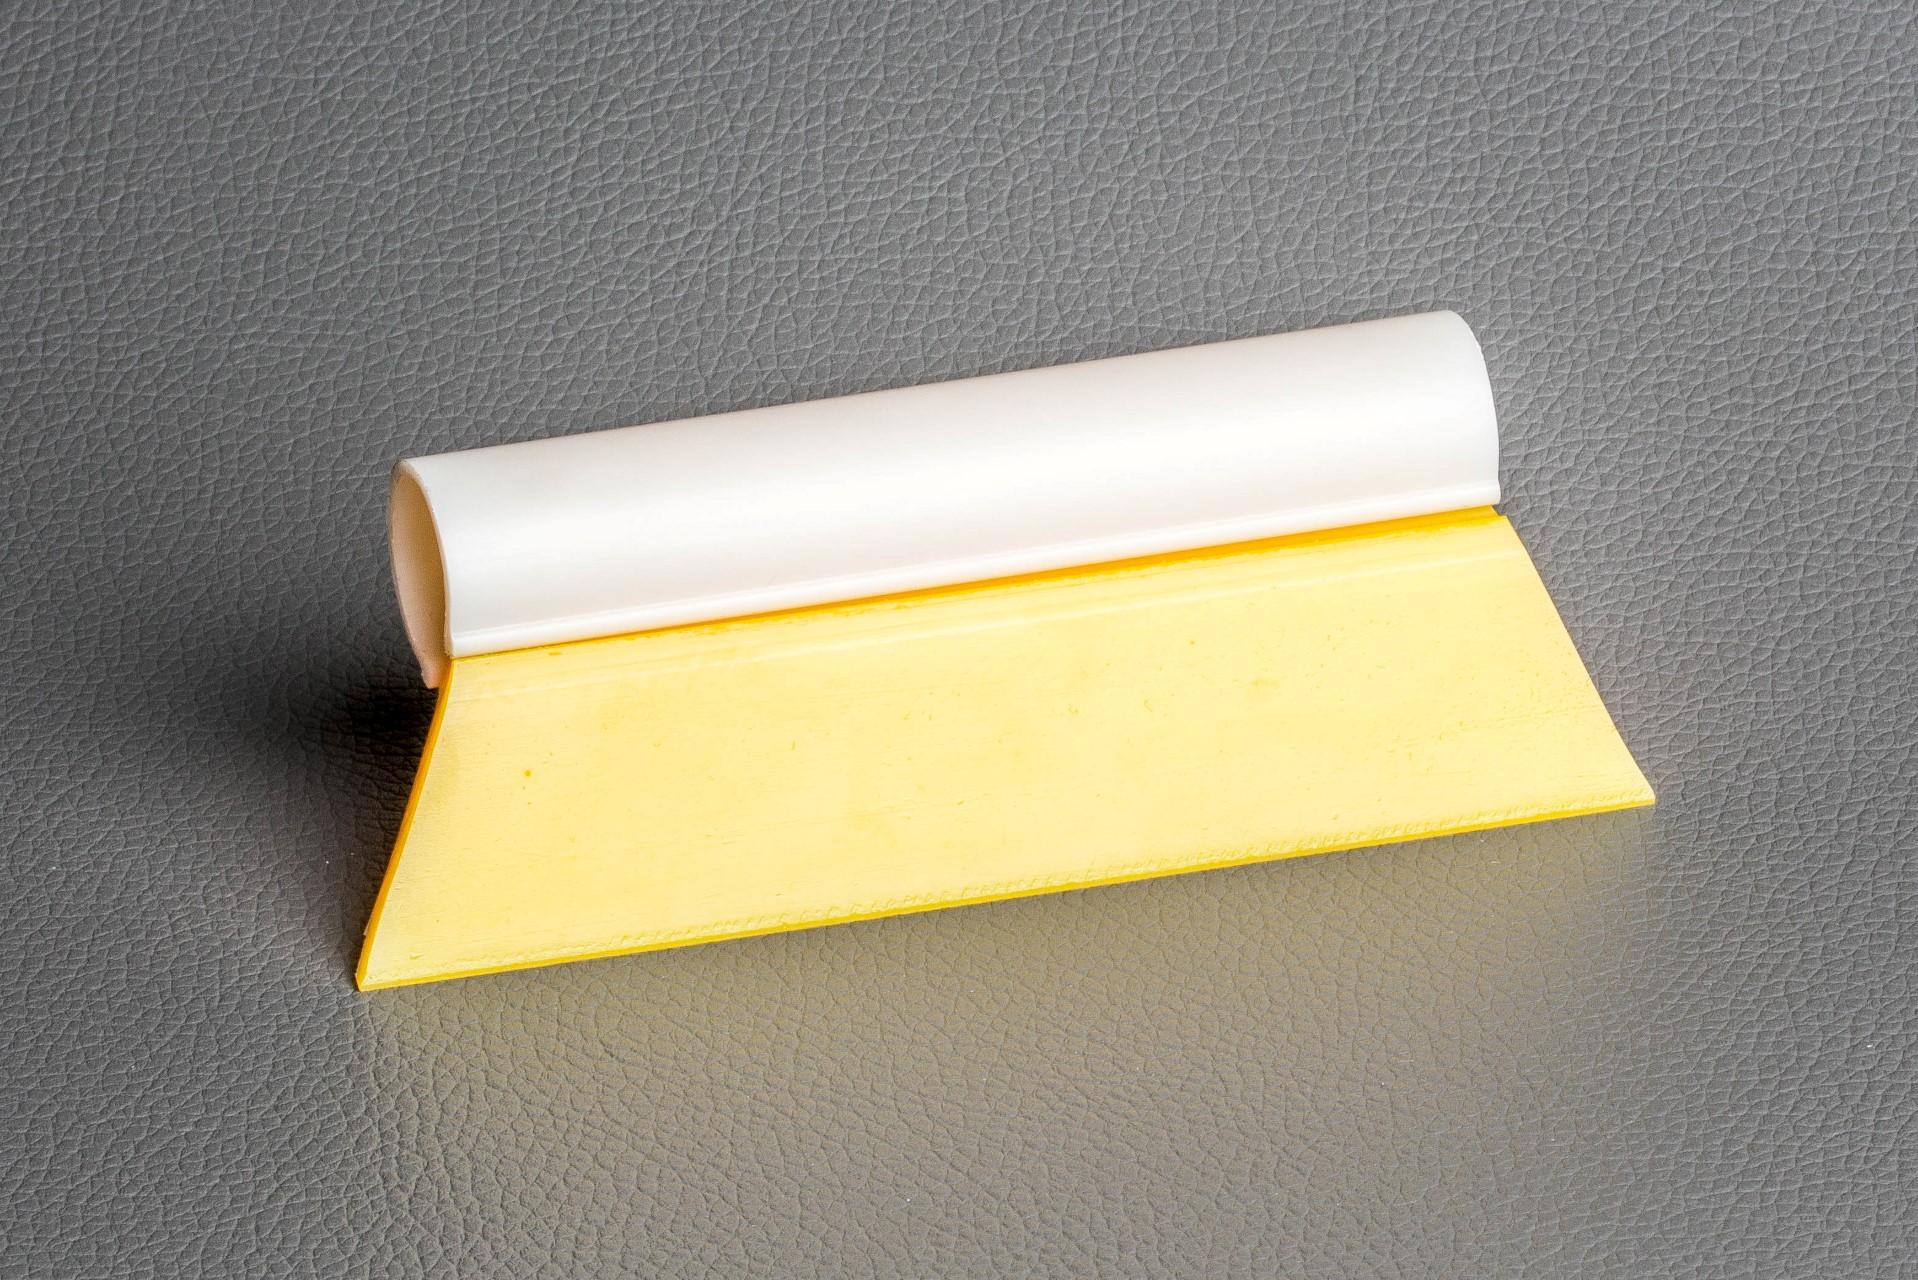 Foto: Quetscher gelb - Kantenlänge 14 cm